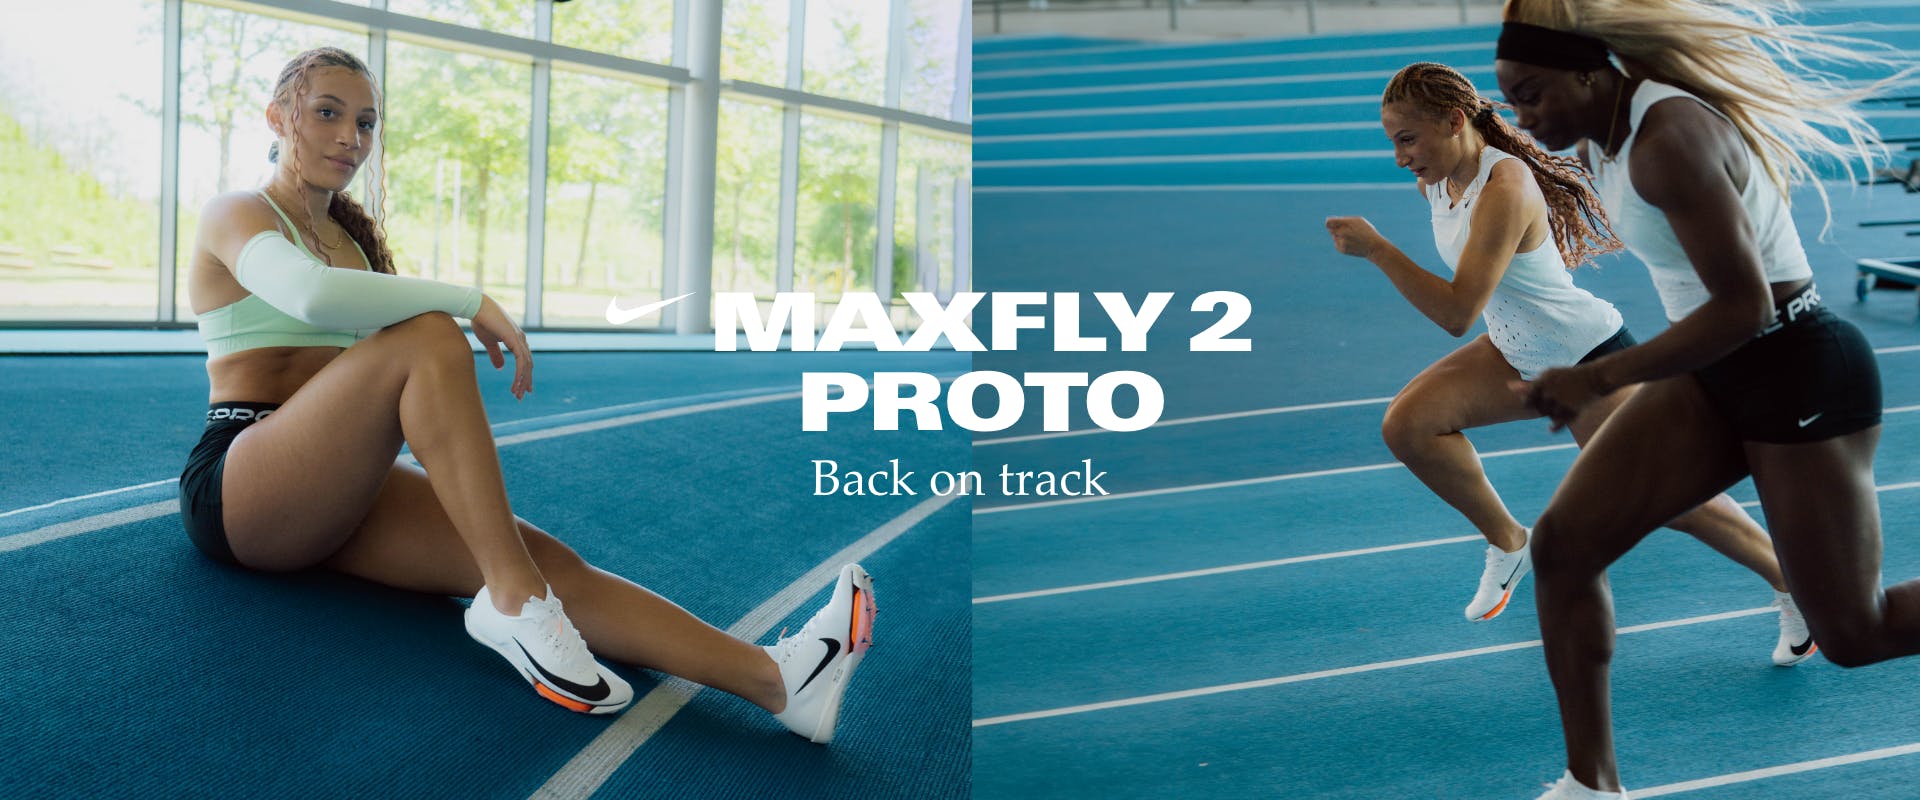 Nike Maxfly 2 Proto